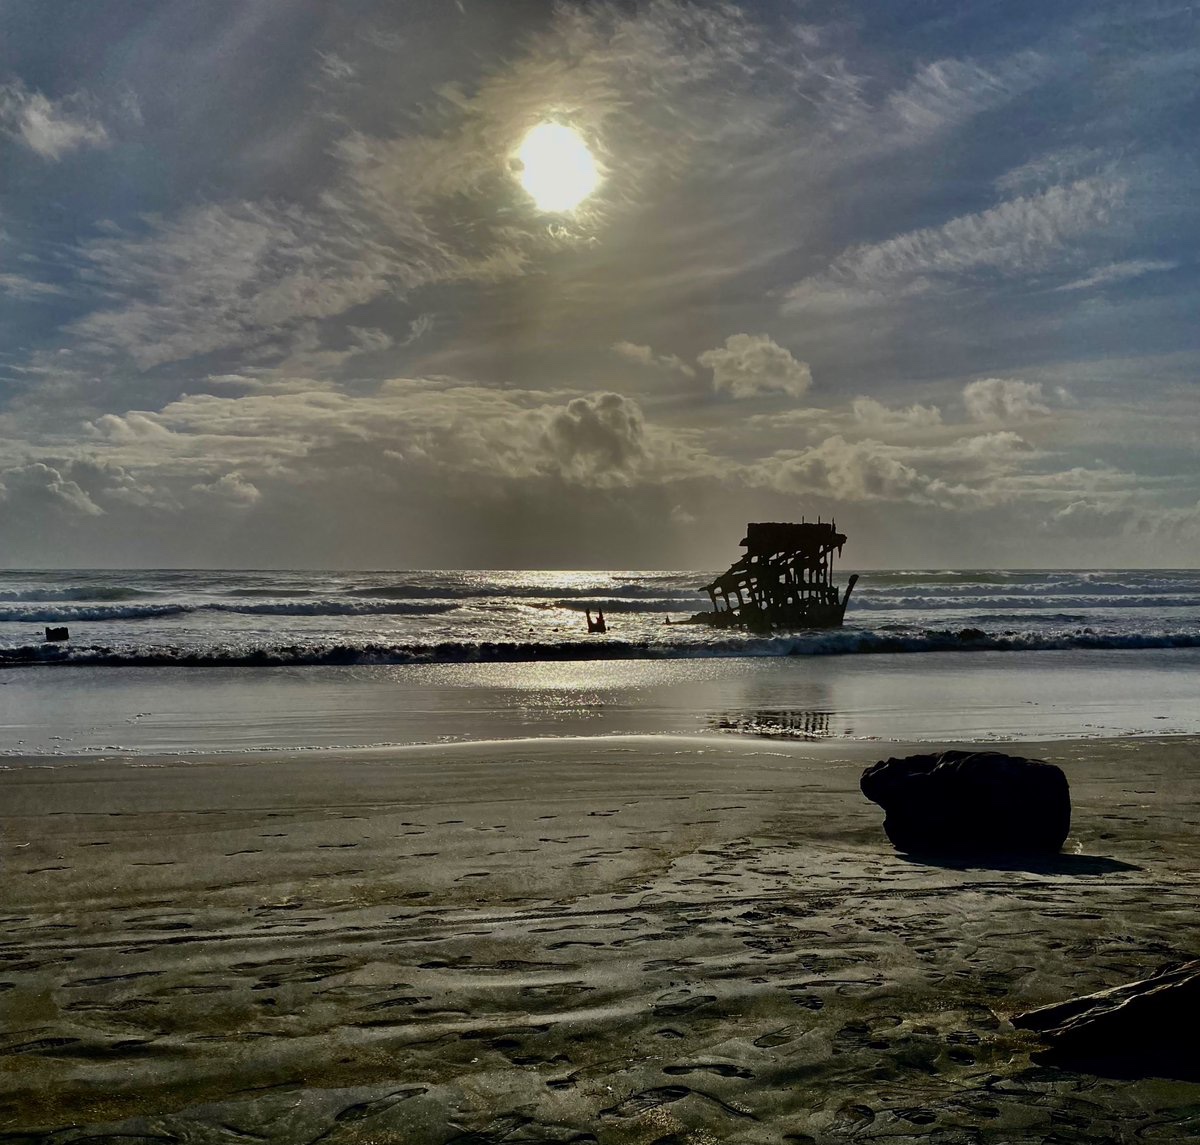 Reality check:  
Die Strandträume werden gegen den Haushalt oder den Bürostuhl getauscht!
#urlaubistvorbei #lasvacacionesterminan
#Wednesdayvibe 
#NaturePhotography 
#landscapephotography #beach #OceanBreeze #Pacific #usatravel